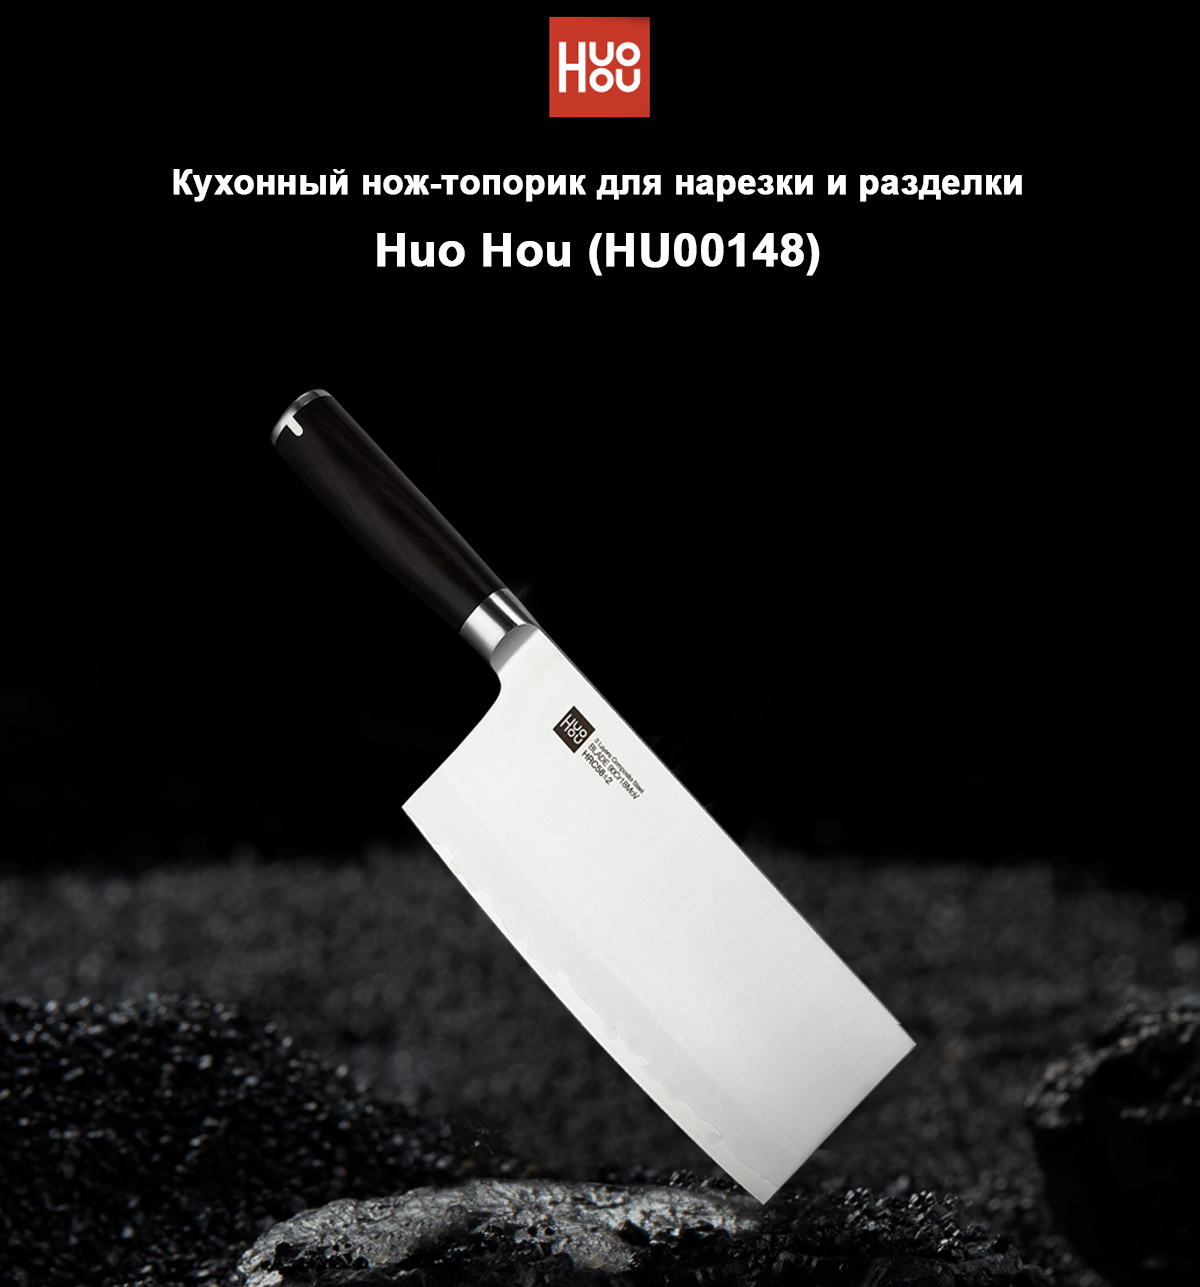 Кухонный нож-топорик для нарезки и разделки Huo Hou (HU00148)